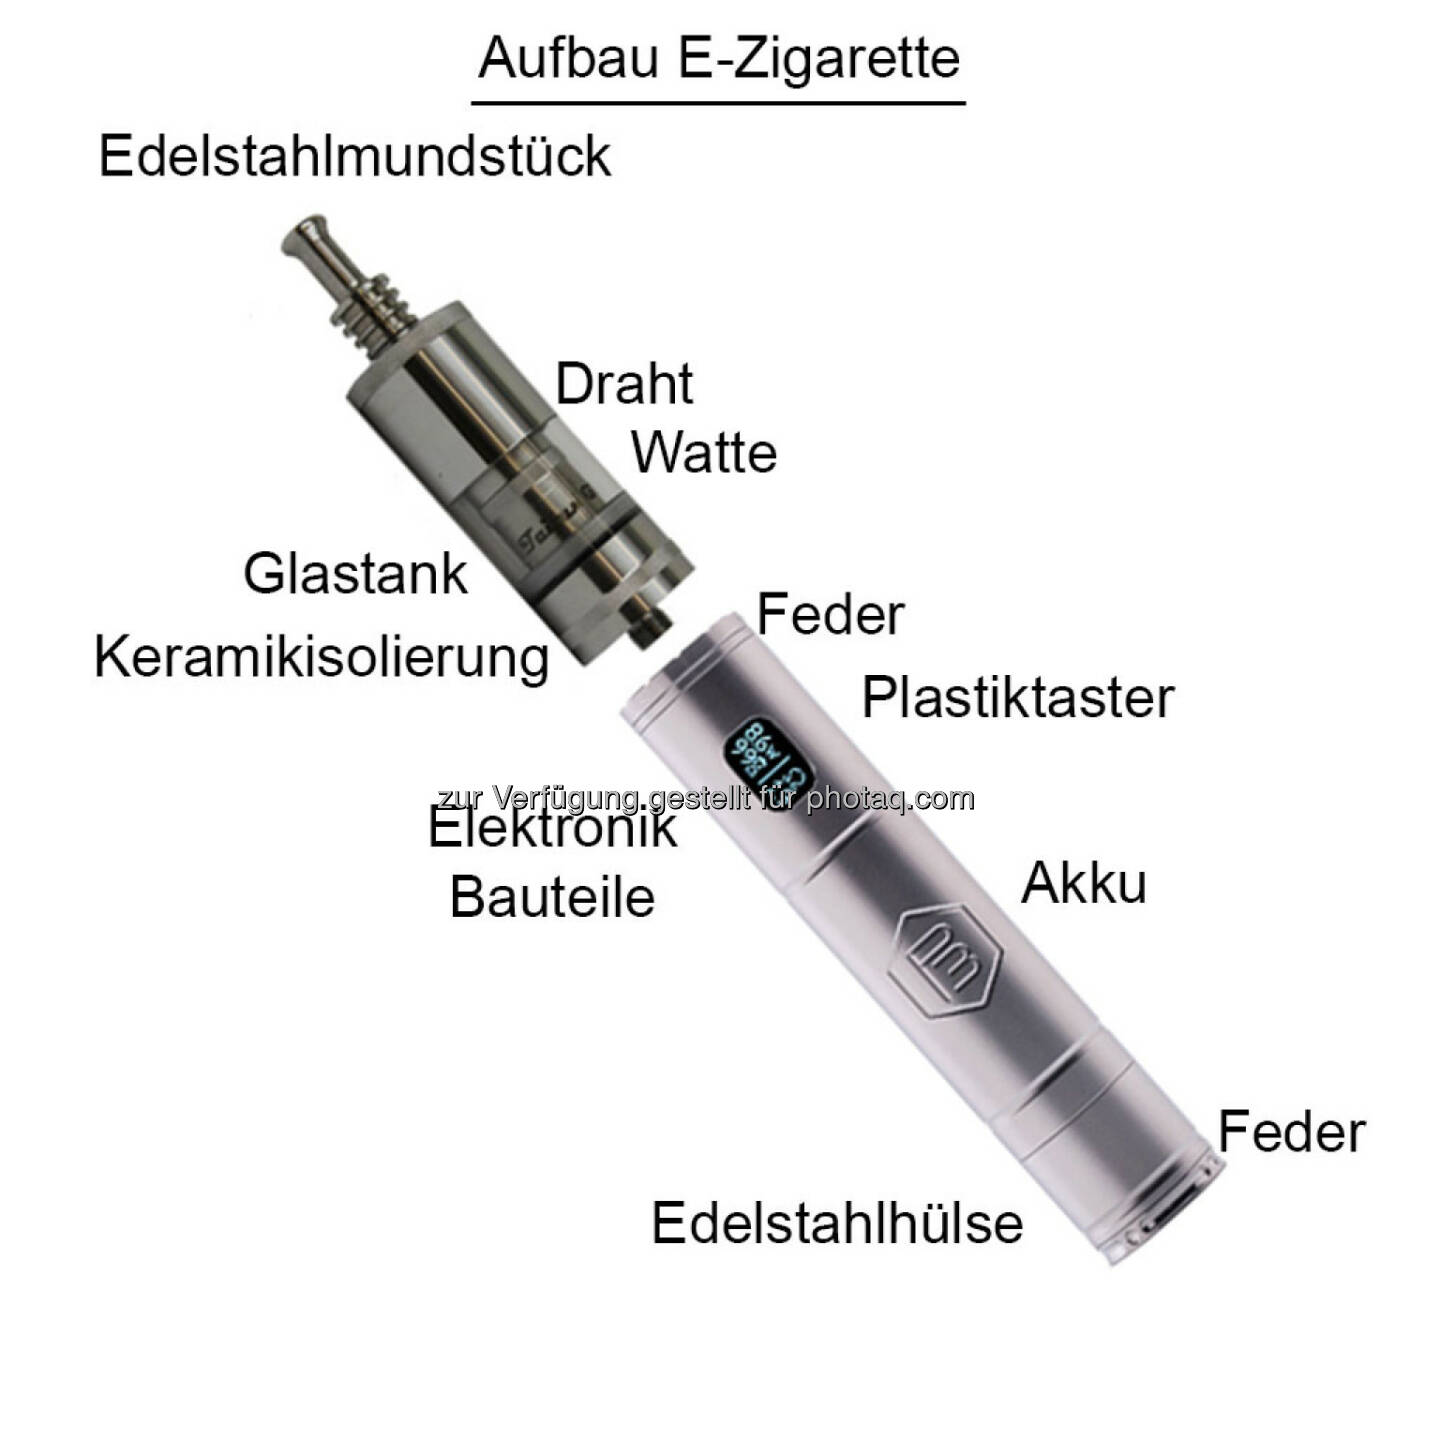 e-dampfzigarette: E-Zigarette soll für Trafikanten geopfert werden